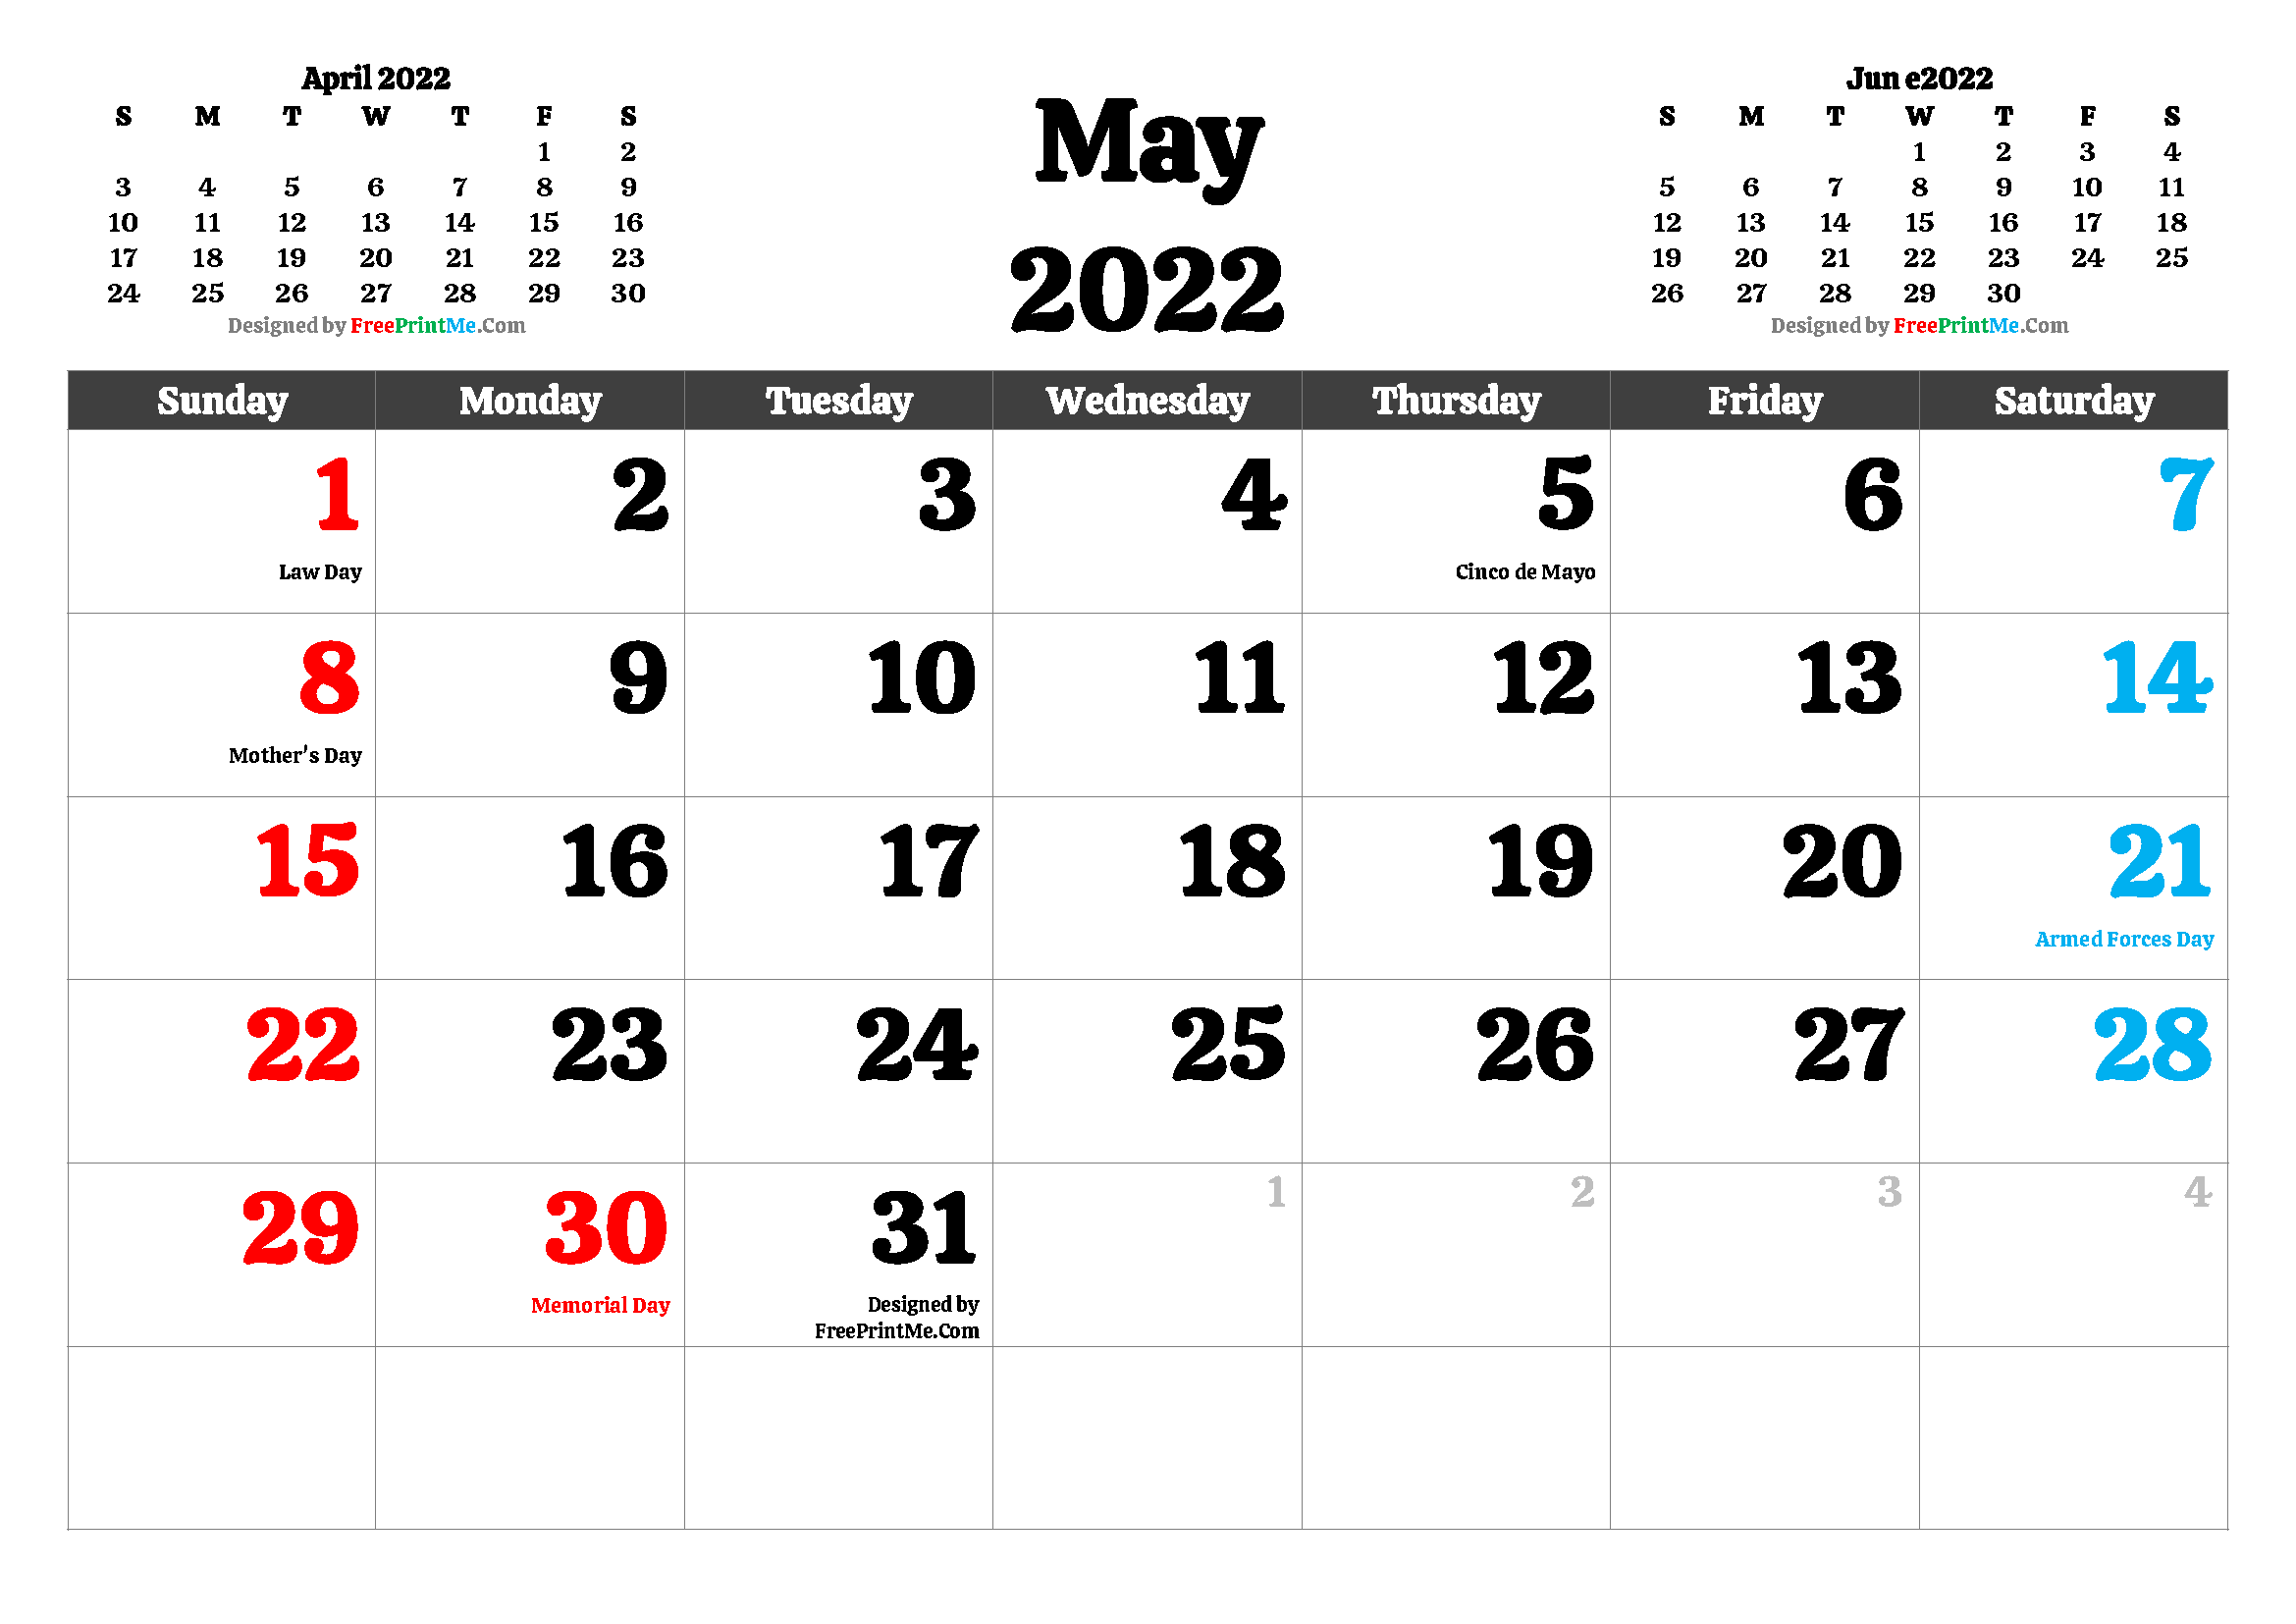 Free Printable 2022 Calendar With Holidays Free Printable May 2022 Calendar Pdf And Image